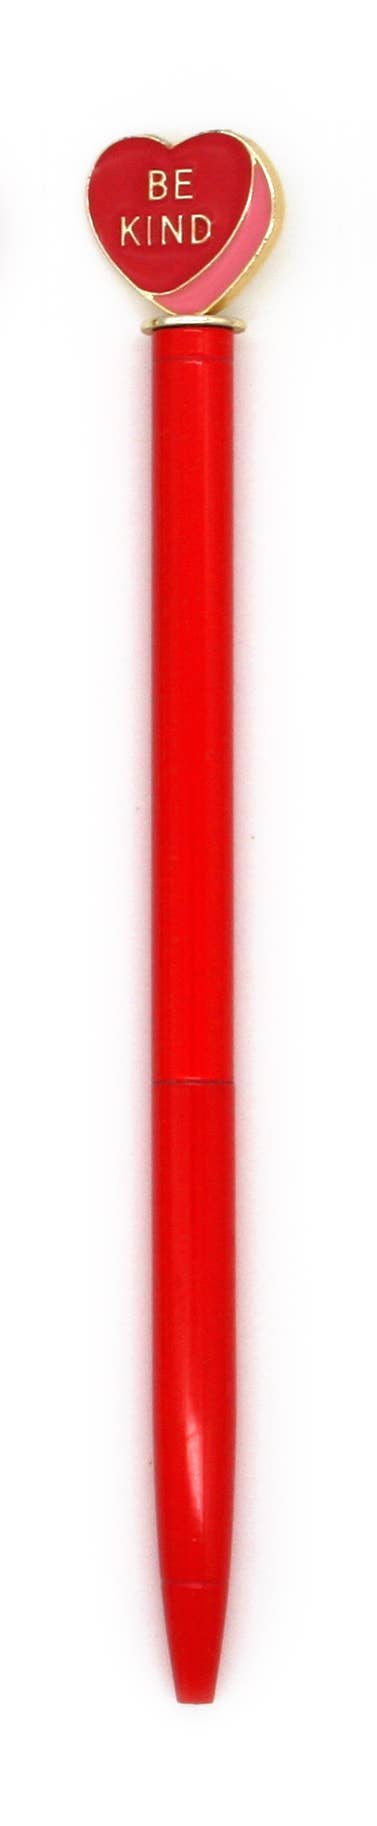 Enamel Heart Charm Pen - Red